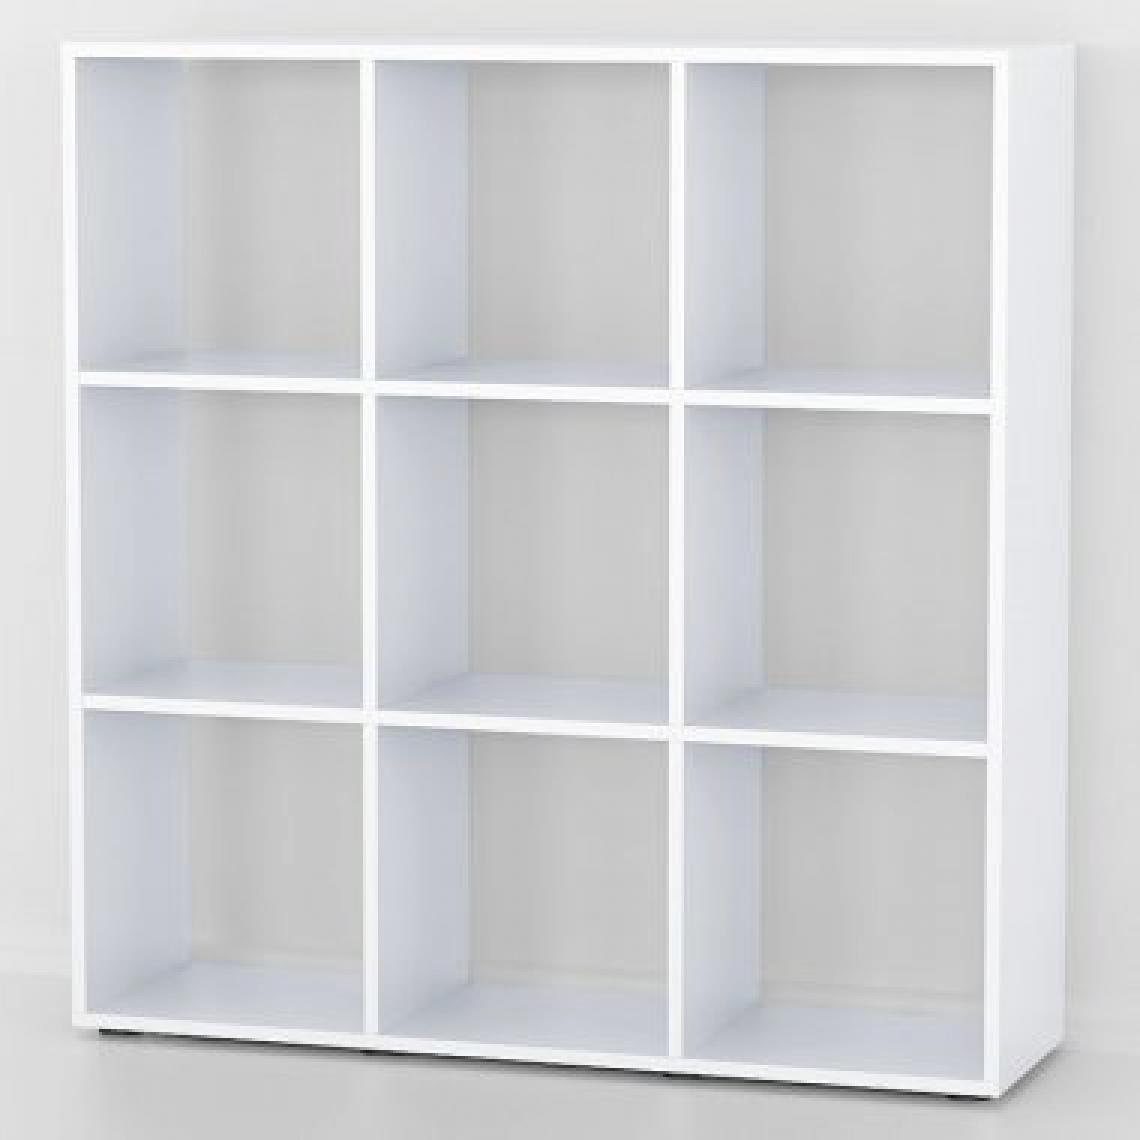 Mpc - Etagère bibliothèque blanche 9 cases 104 x 108 x 29 cm (lxhxp) - Etagères